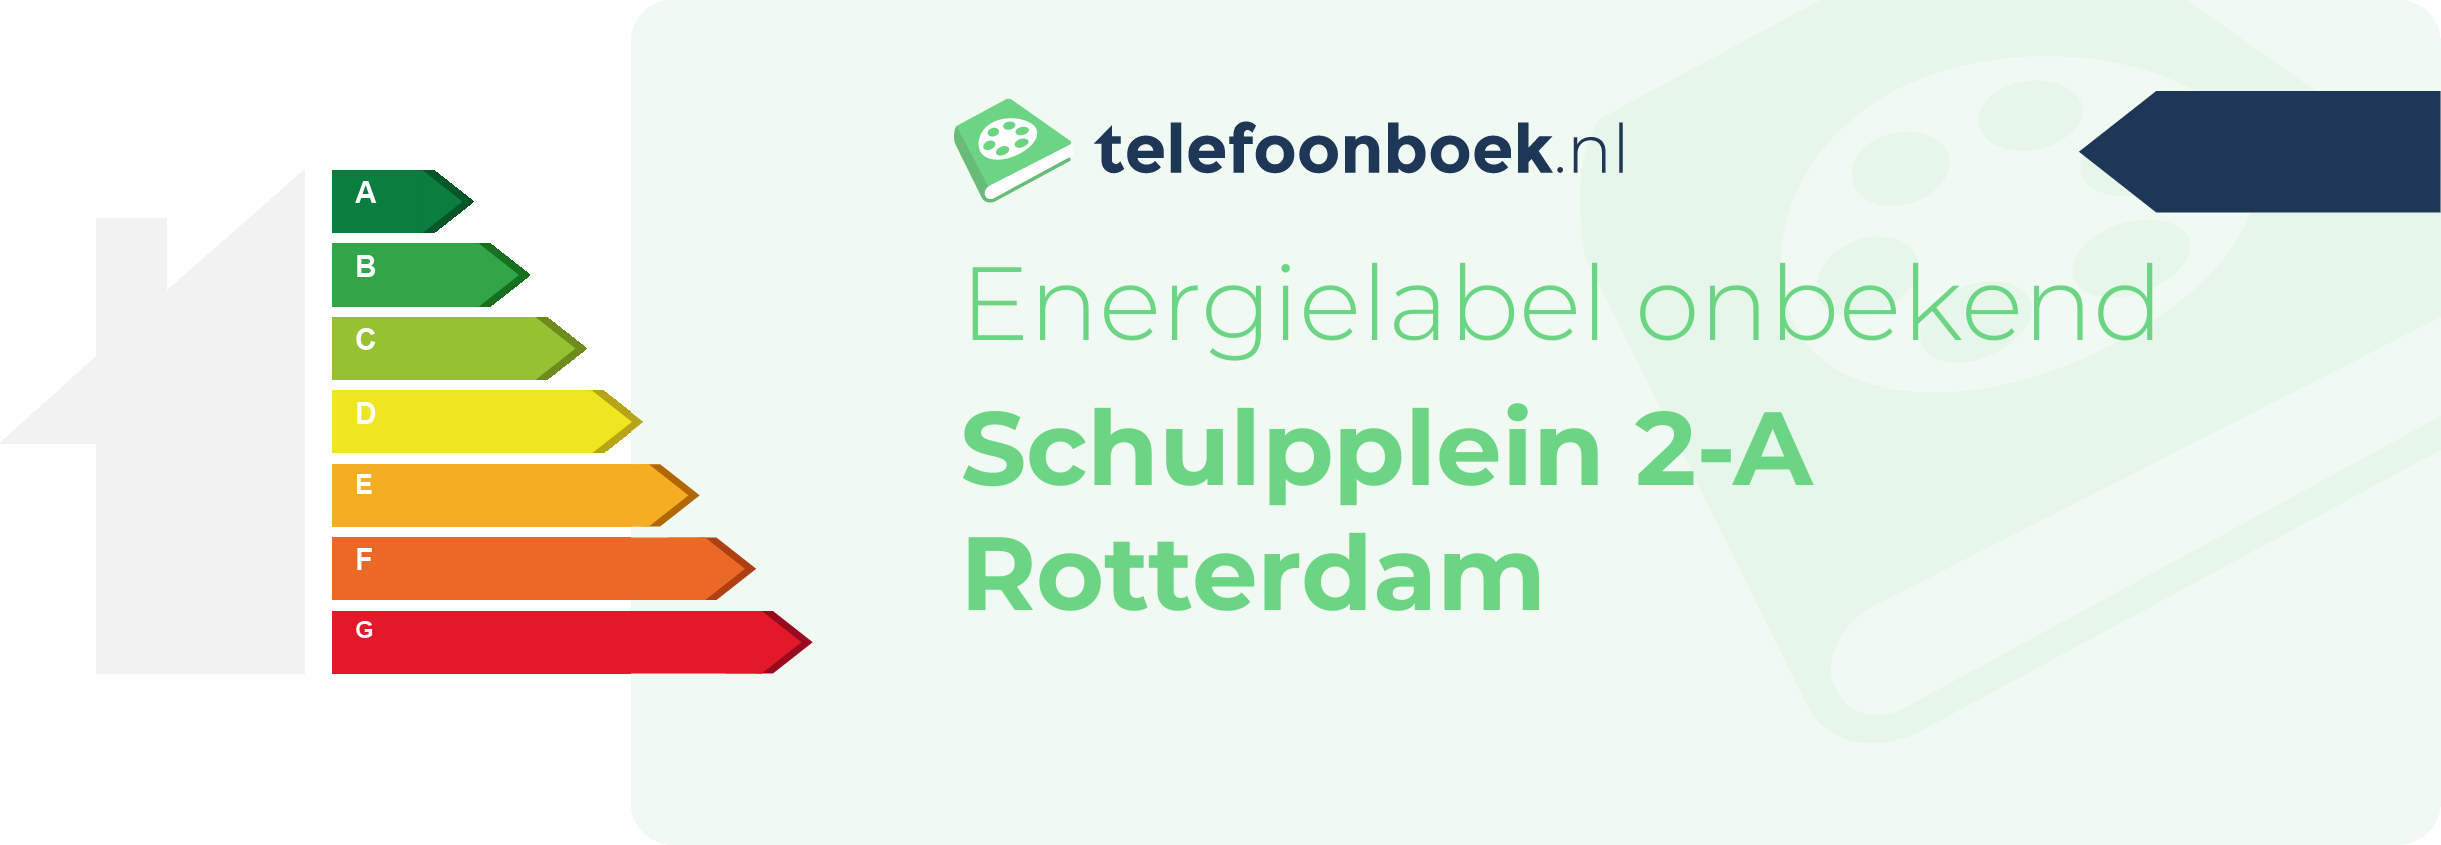 Energielabel Schulpplein 2-A Rotterdam